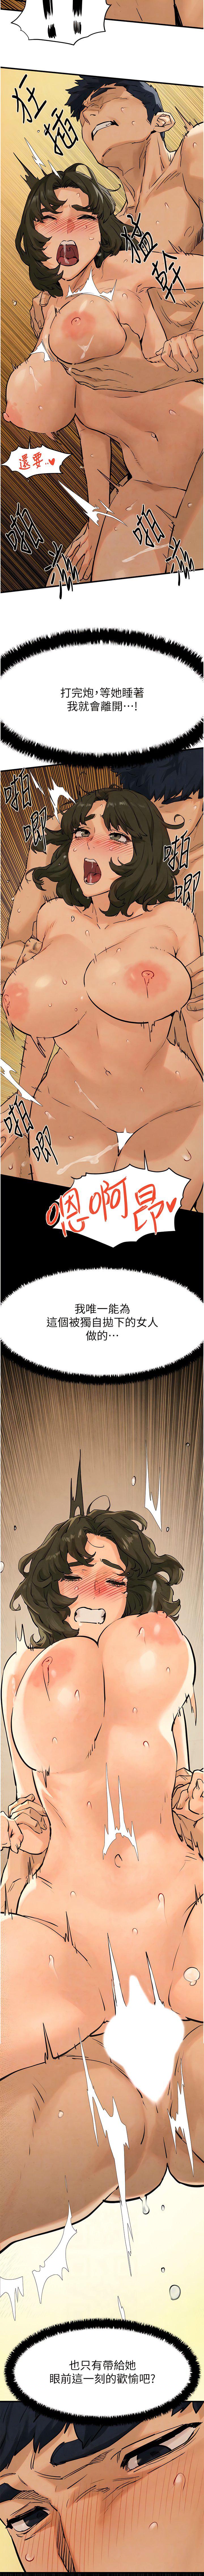 韩国污漫画 欲海交鋒 第6话 寻找性奴的危险顾客 13